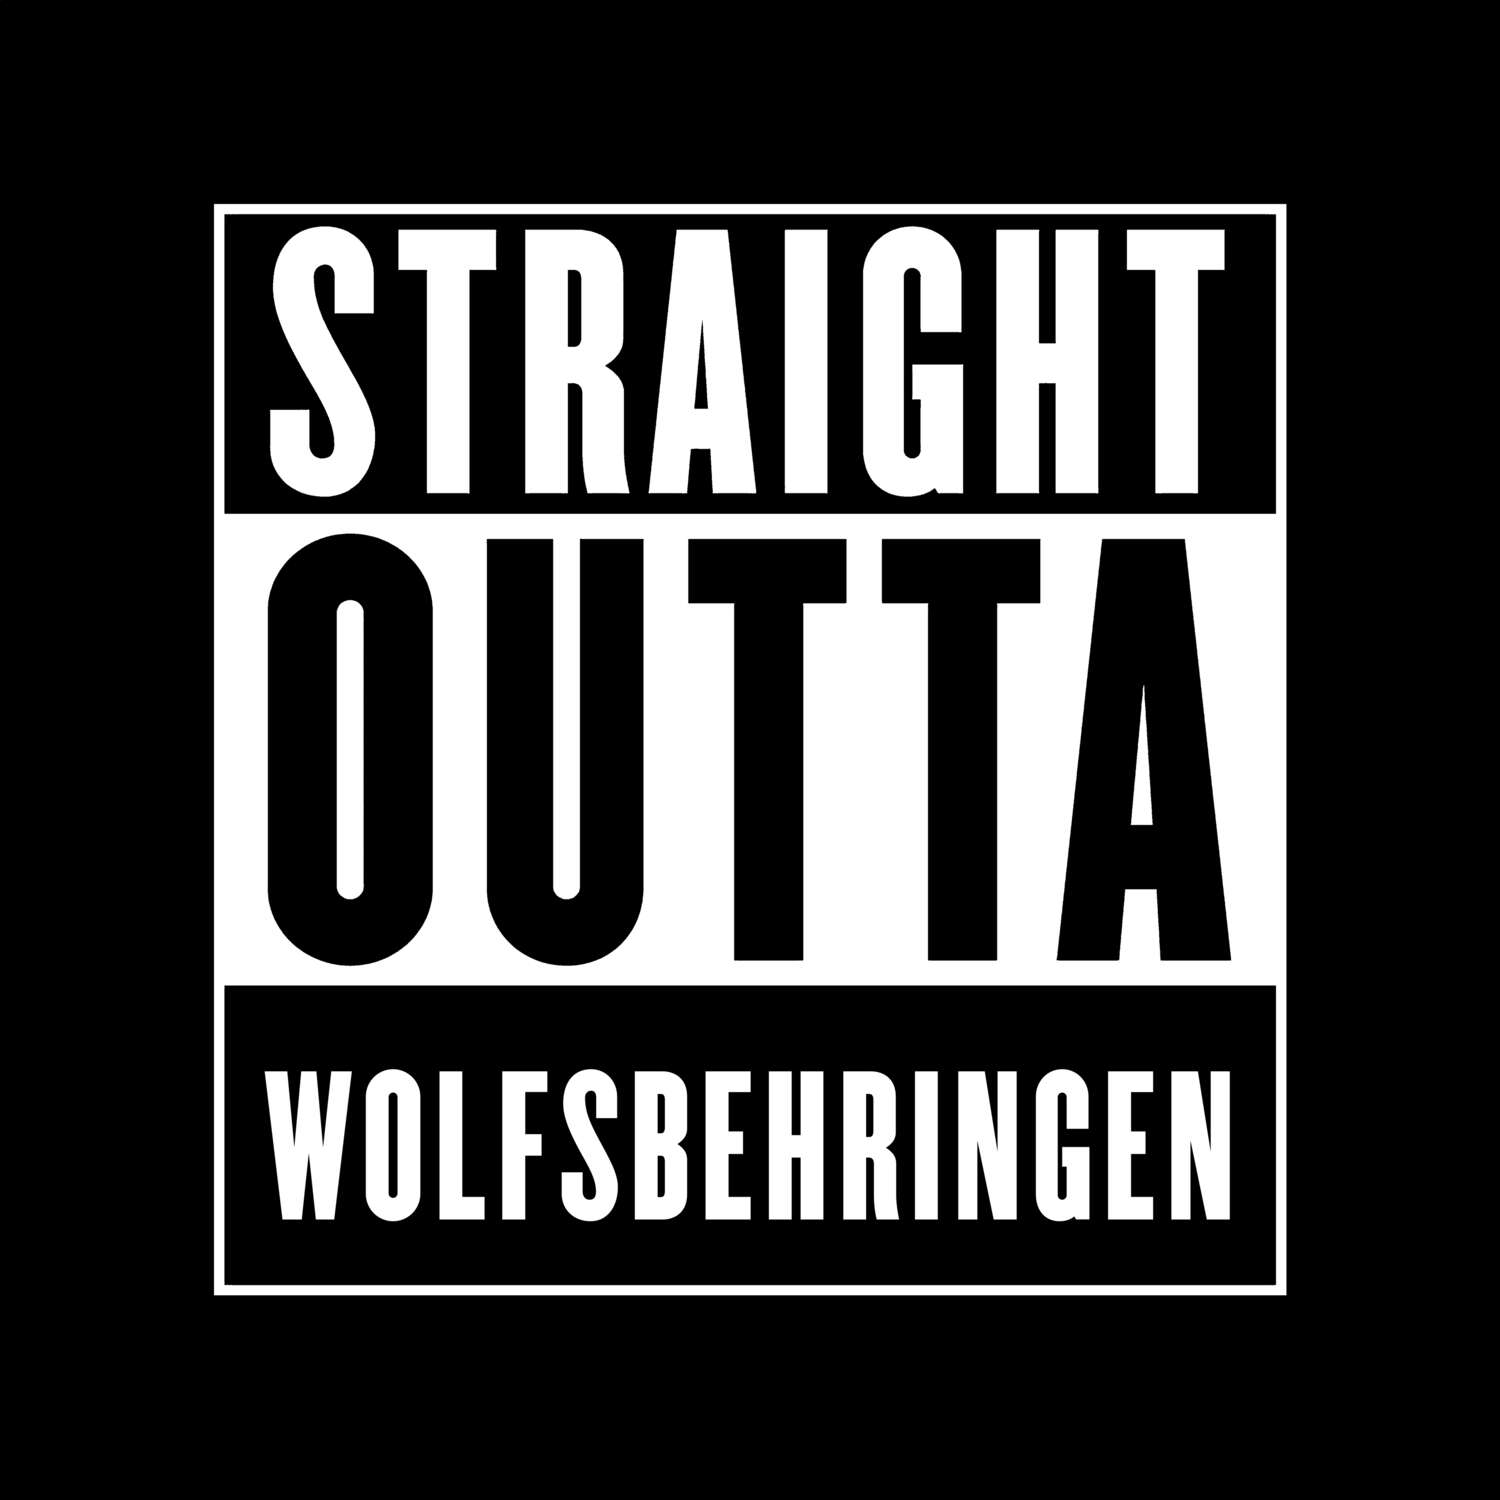 Wolfsbehringen T-Shirt »Straight Outta«